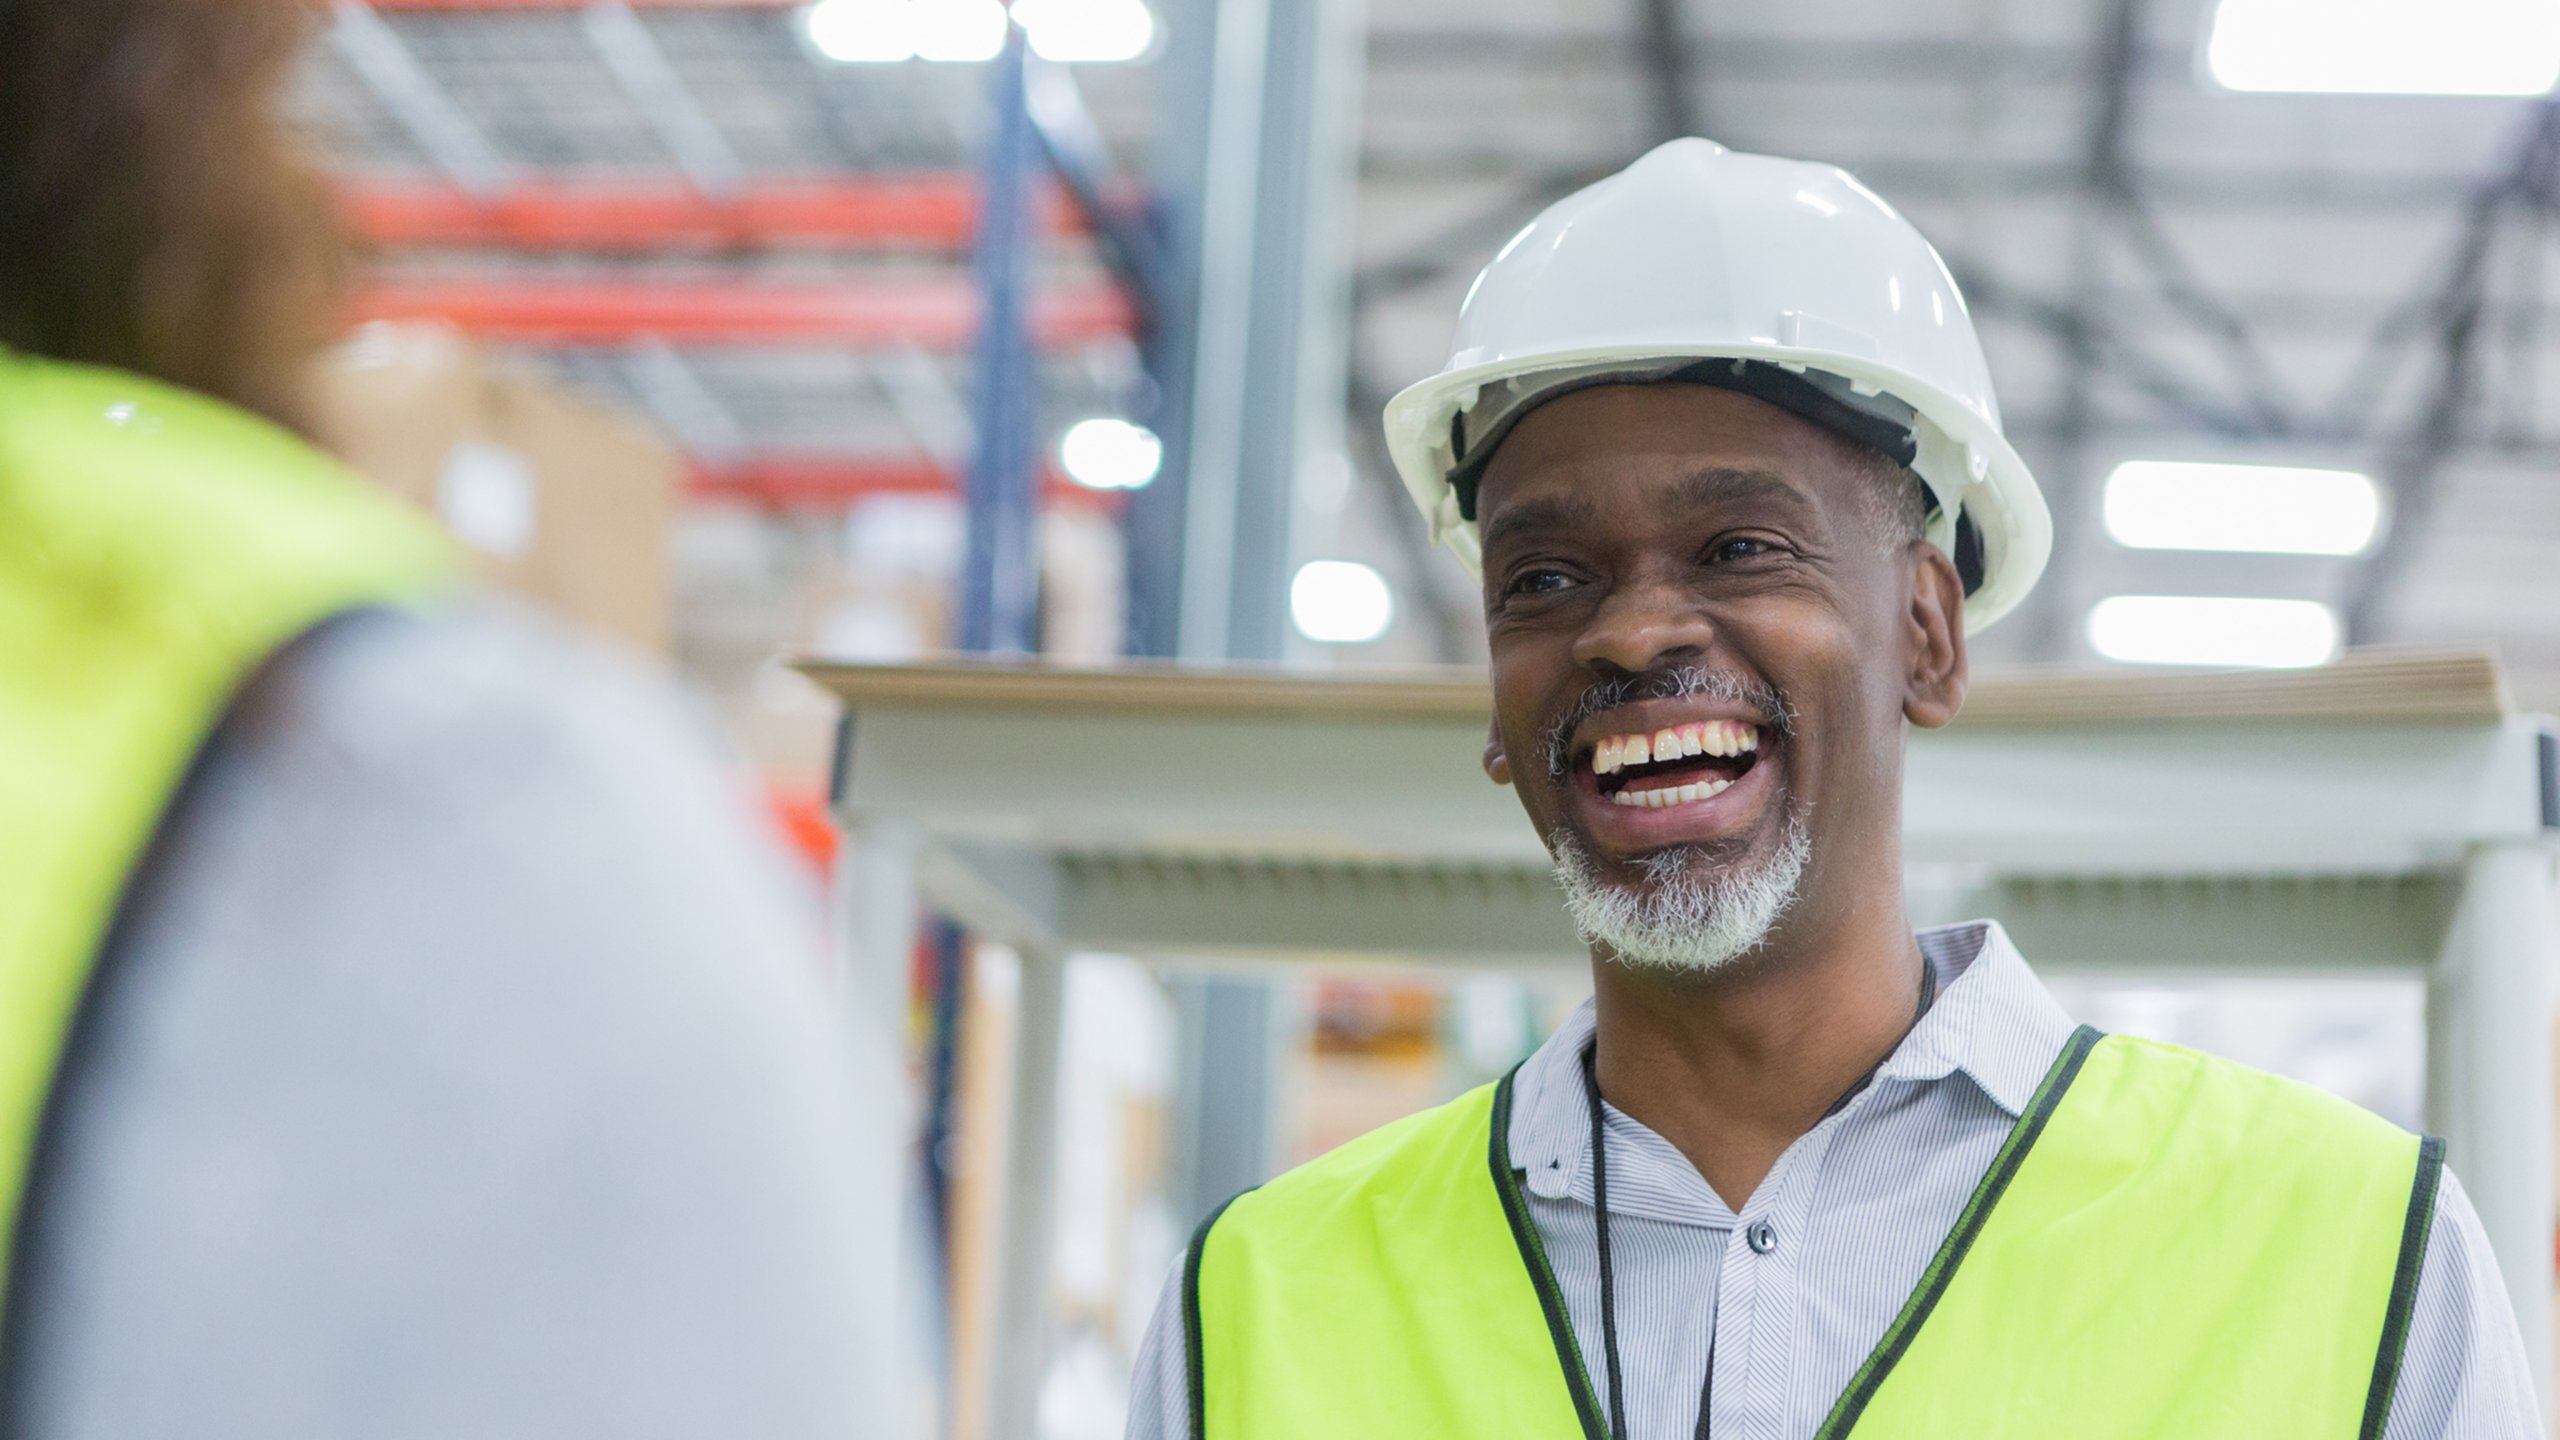 Lächelnder männlicher Arbeiter mit gelber Sicherheitsweste und weißem Schutzhelm in einer Fabrik